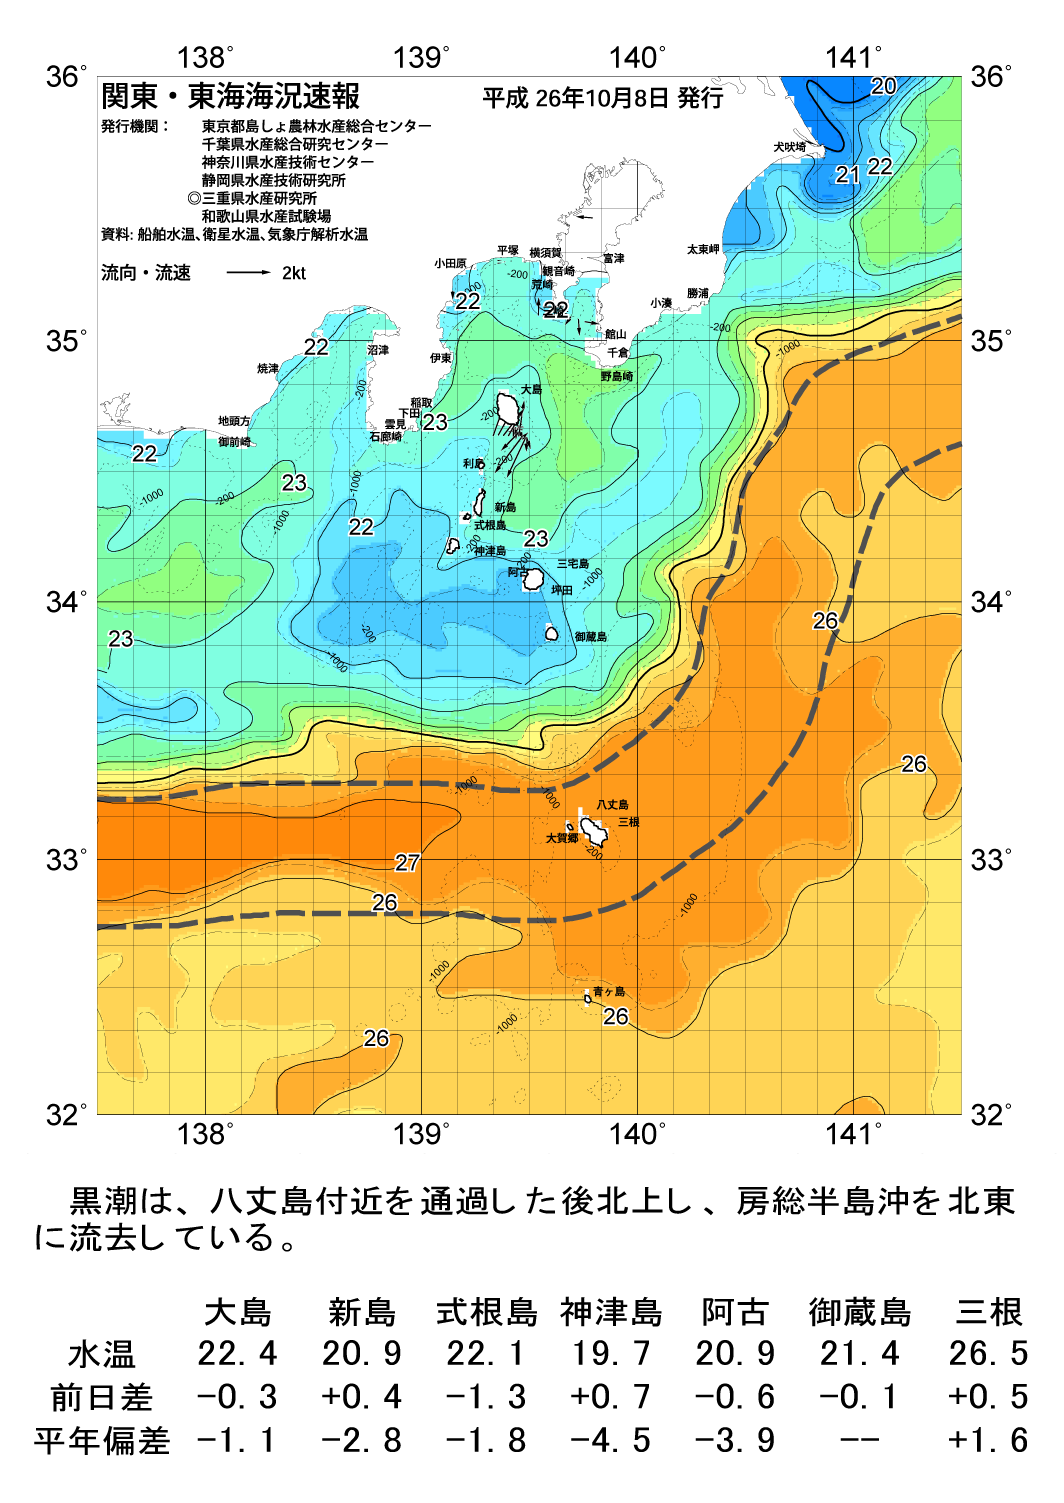 海の天気図2014年10月8日 東京都島しょ農林水産総合センター